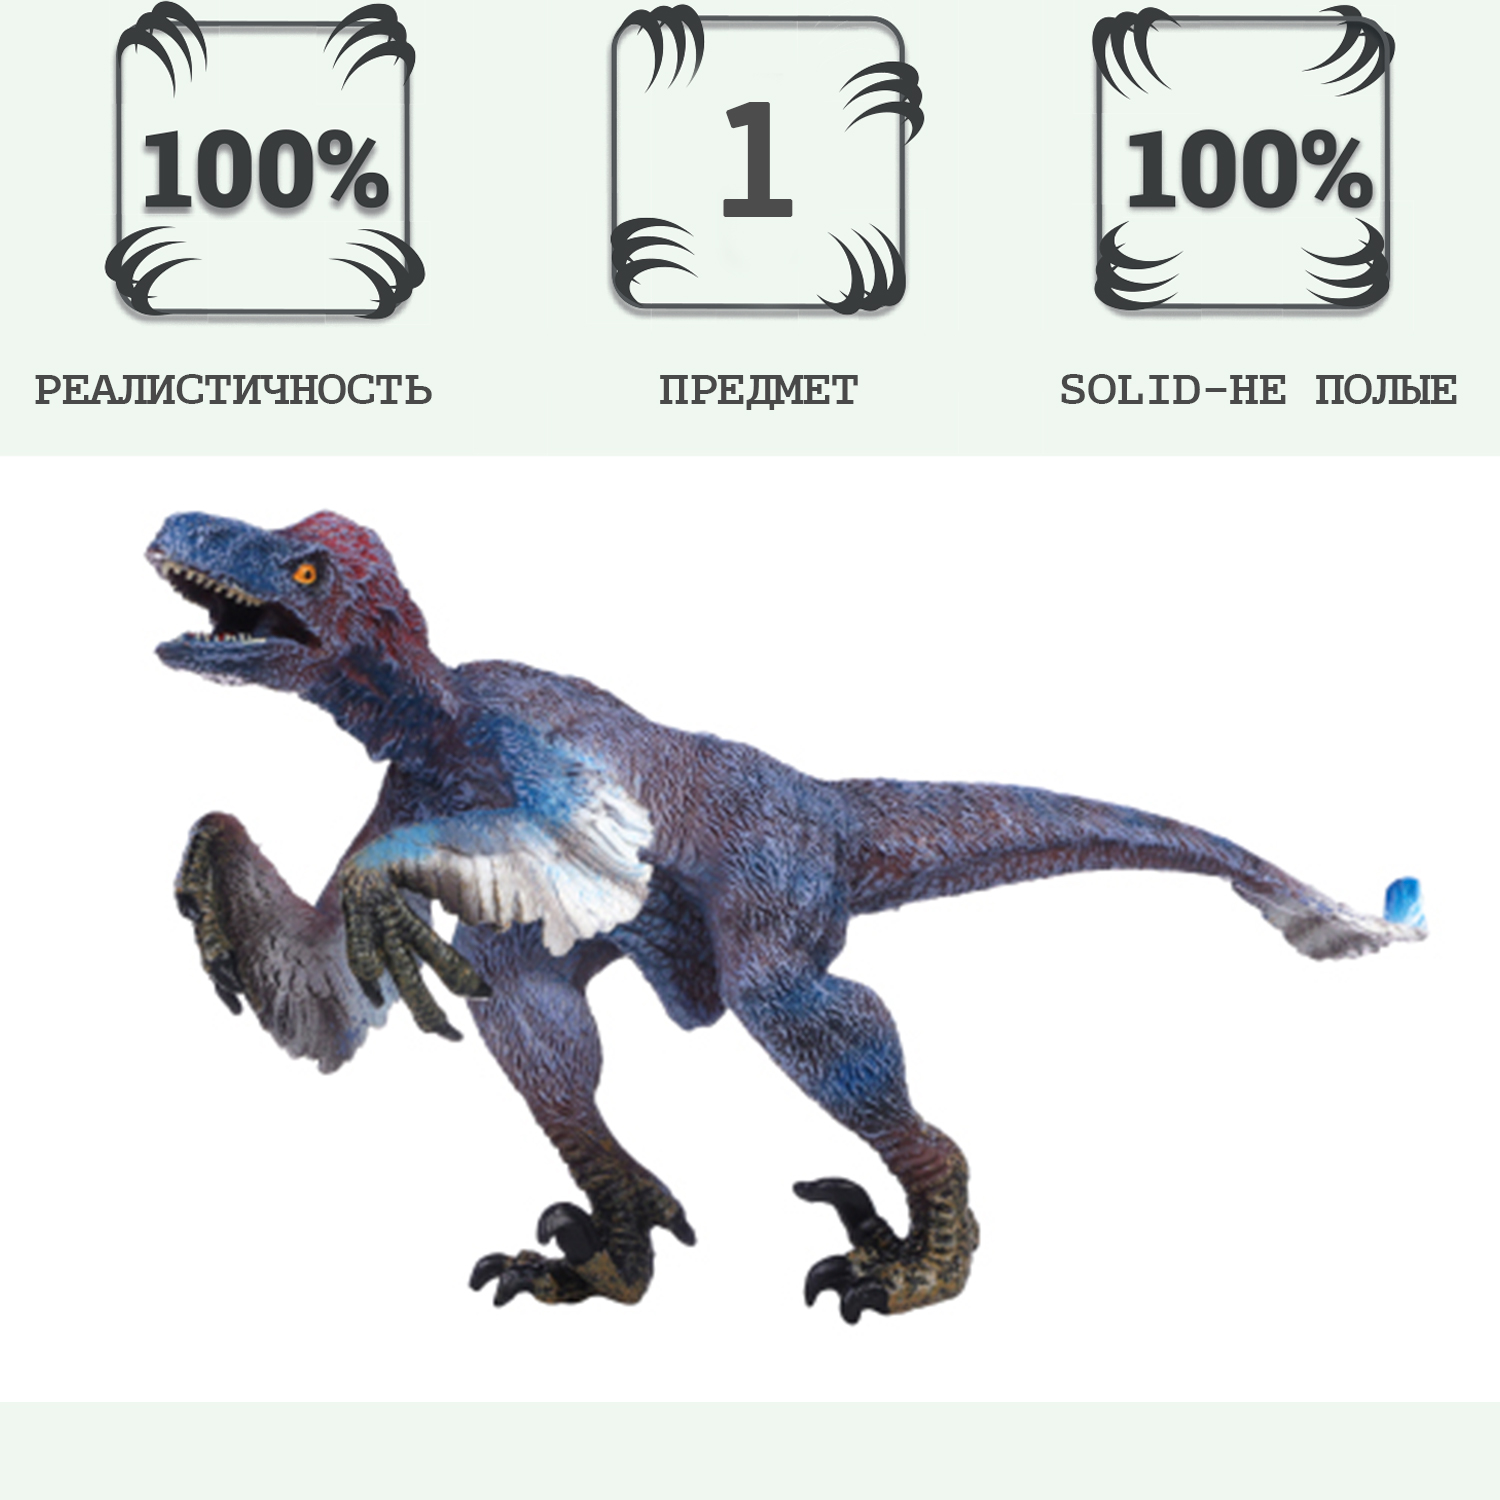 Игрушка динозавр серии Мир динозавров Masai Mara Орнитомим MM216-382